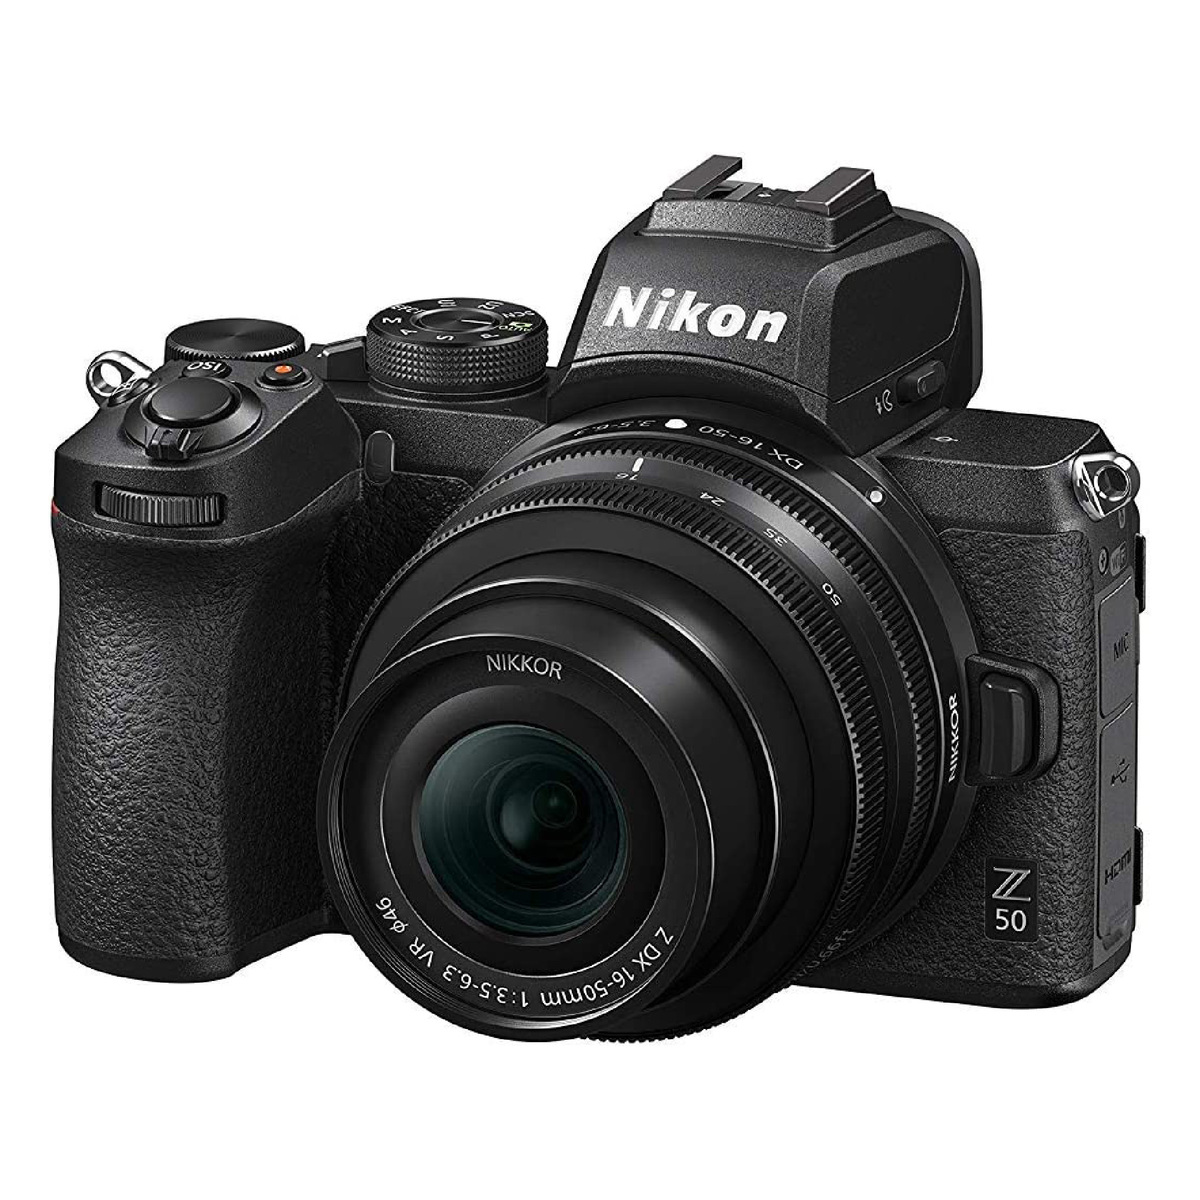 نيكون كاميرا Z50 بدون مرآة مقاس 16-50 مم + مجموعة مدونة فيديو